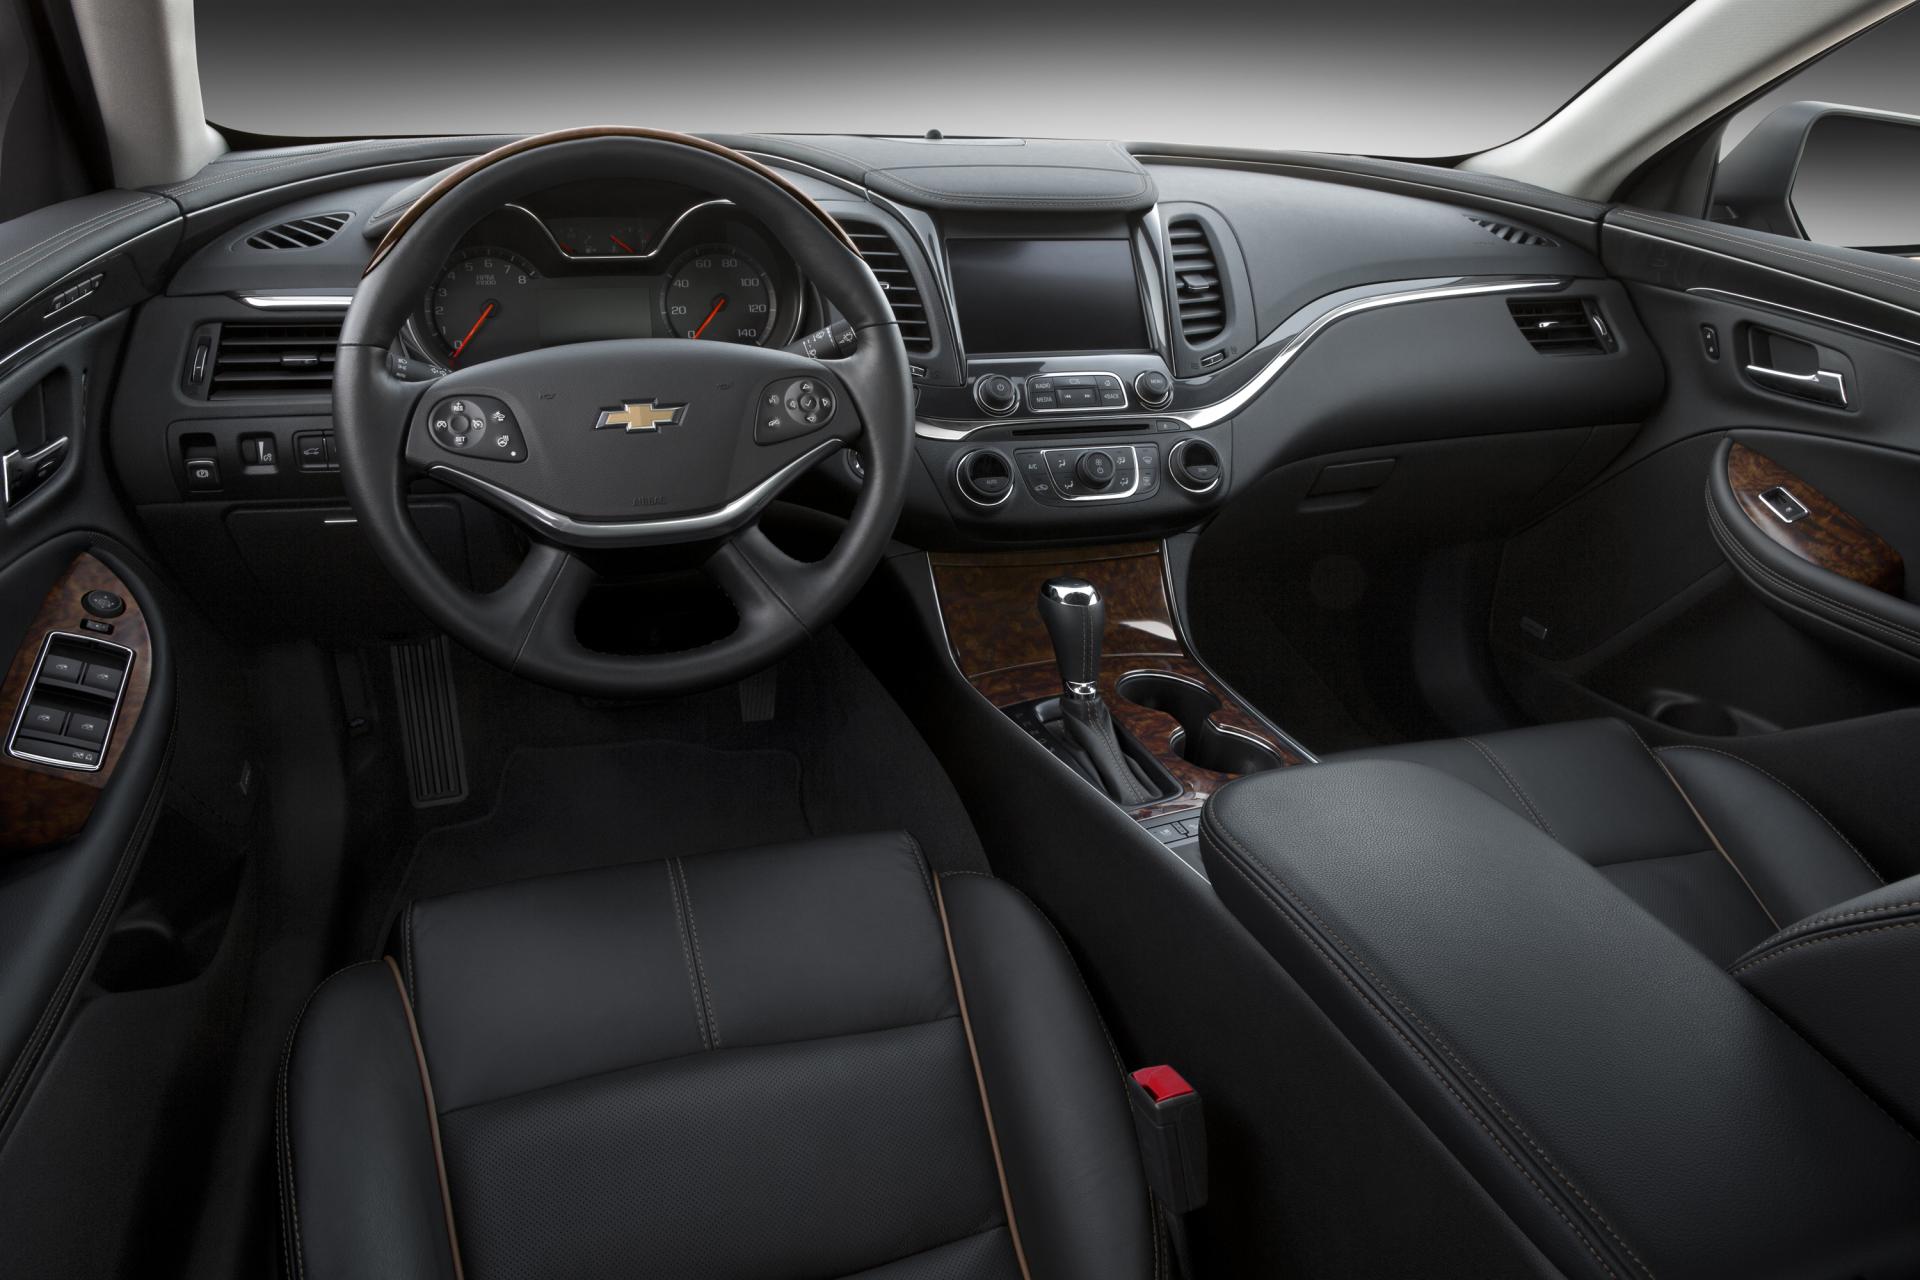 2014 Chevrolet Impala